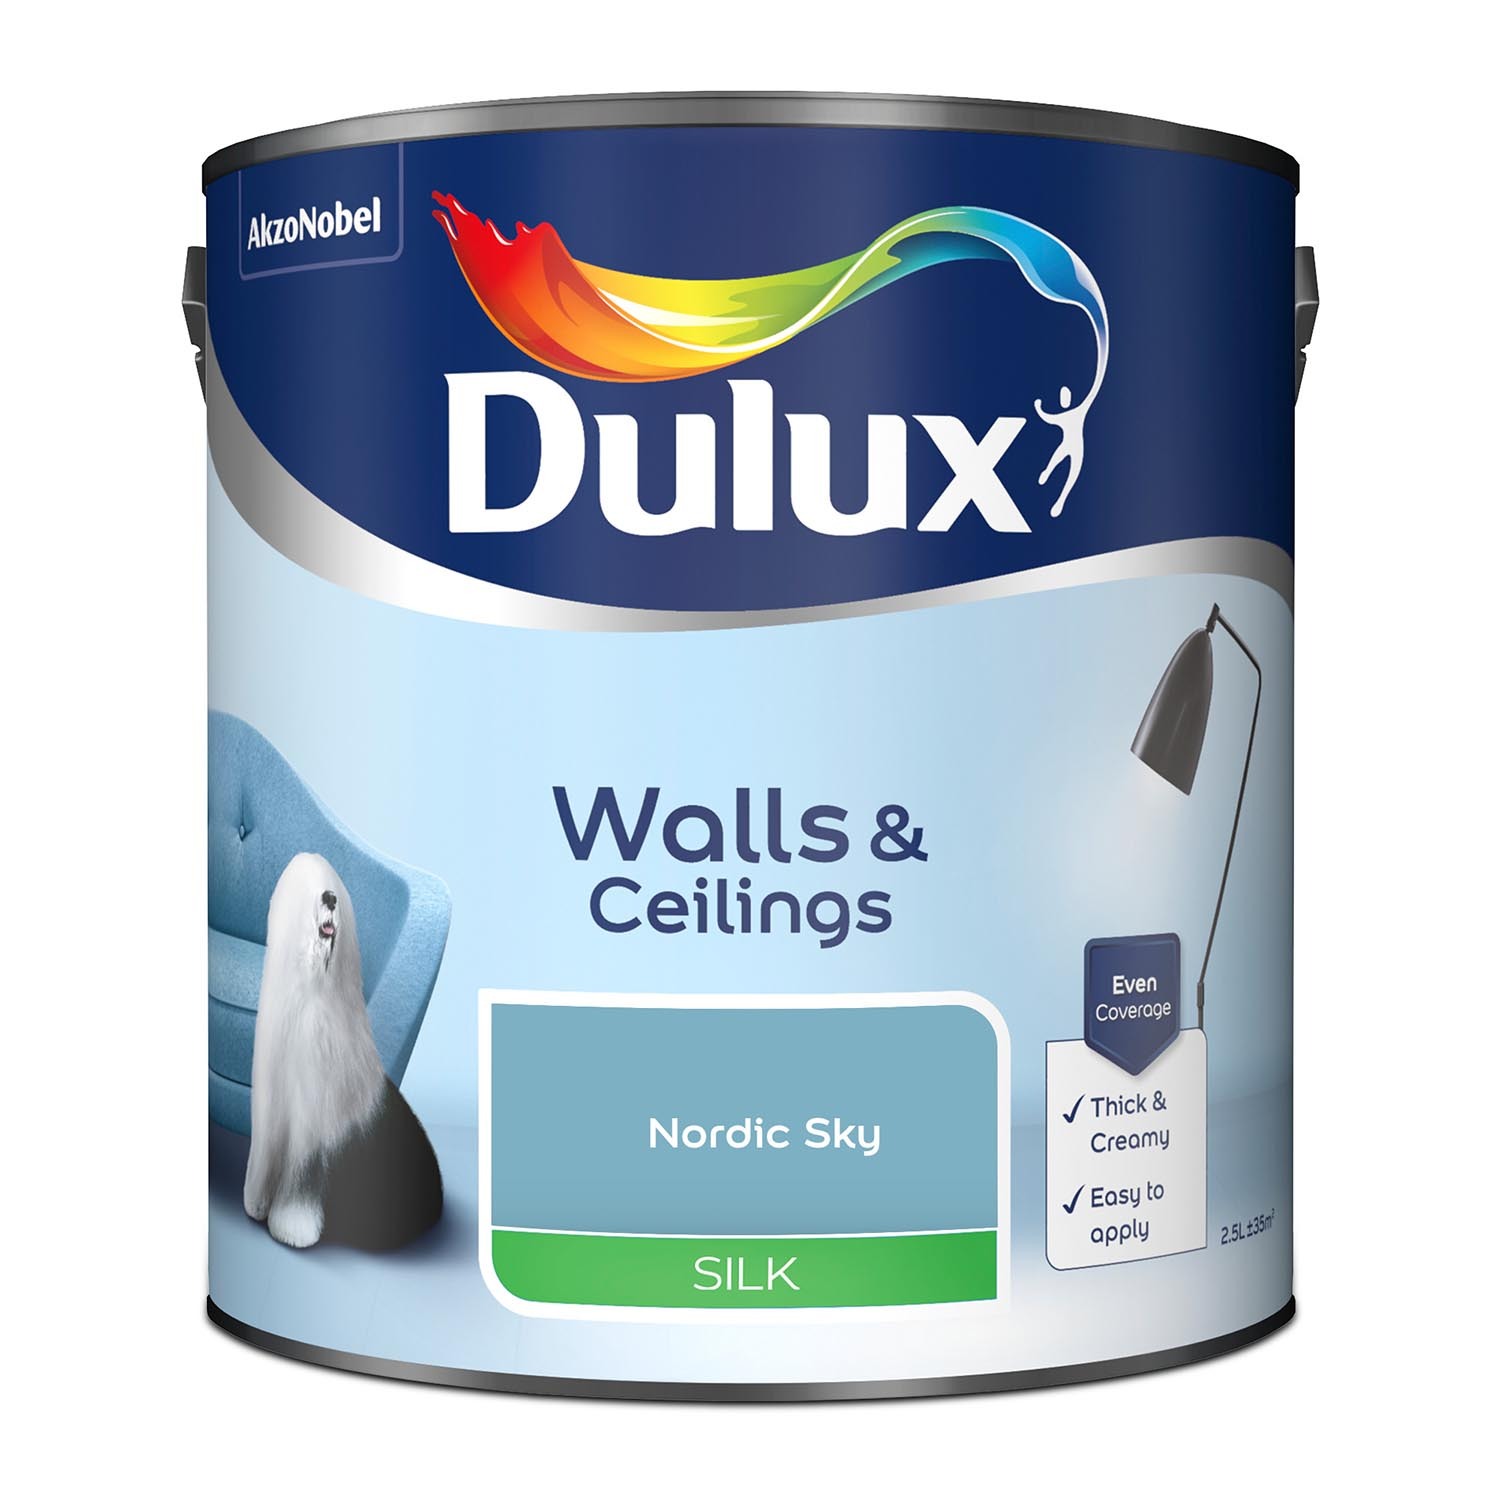 Dulux Walls & Ceilings Nordic Sky Silk Emulsion Paint 2.5L Image 2